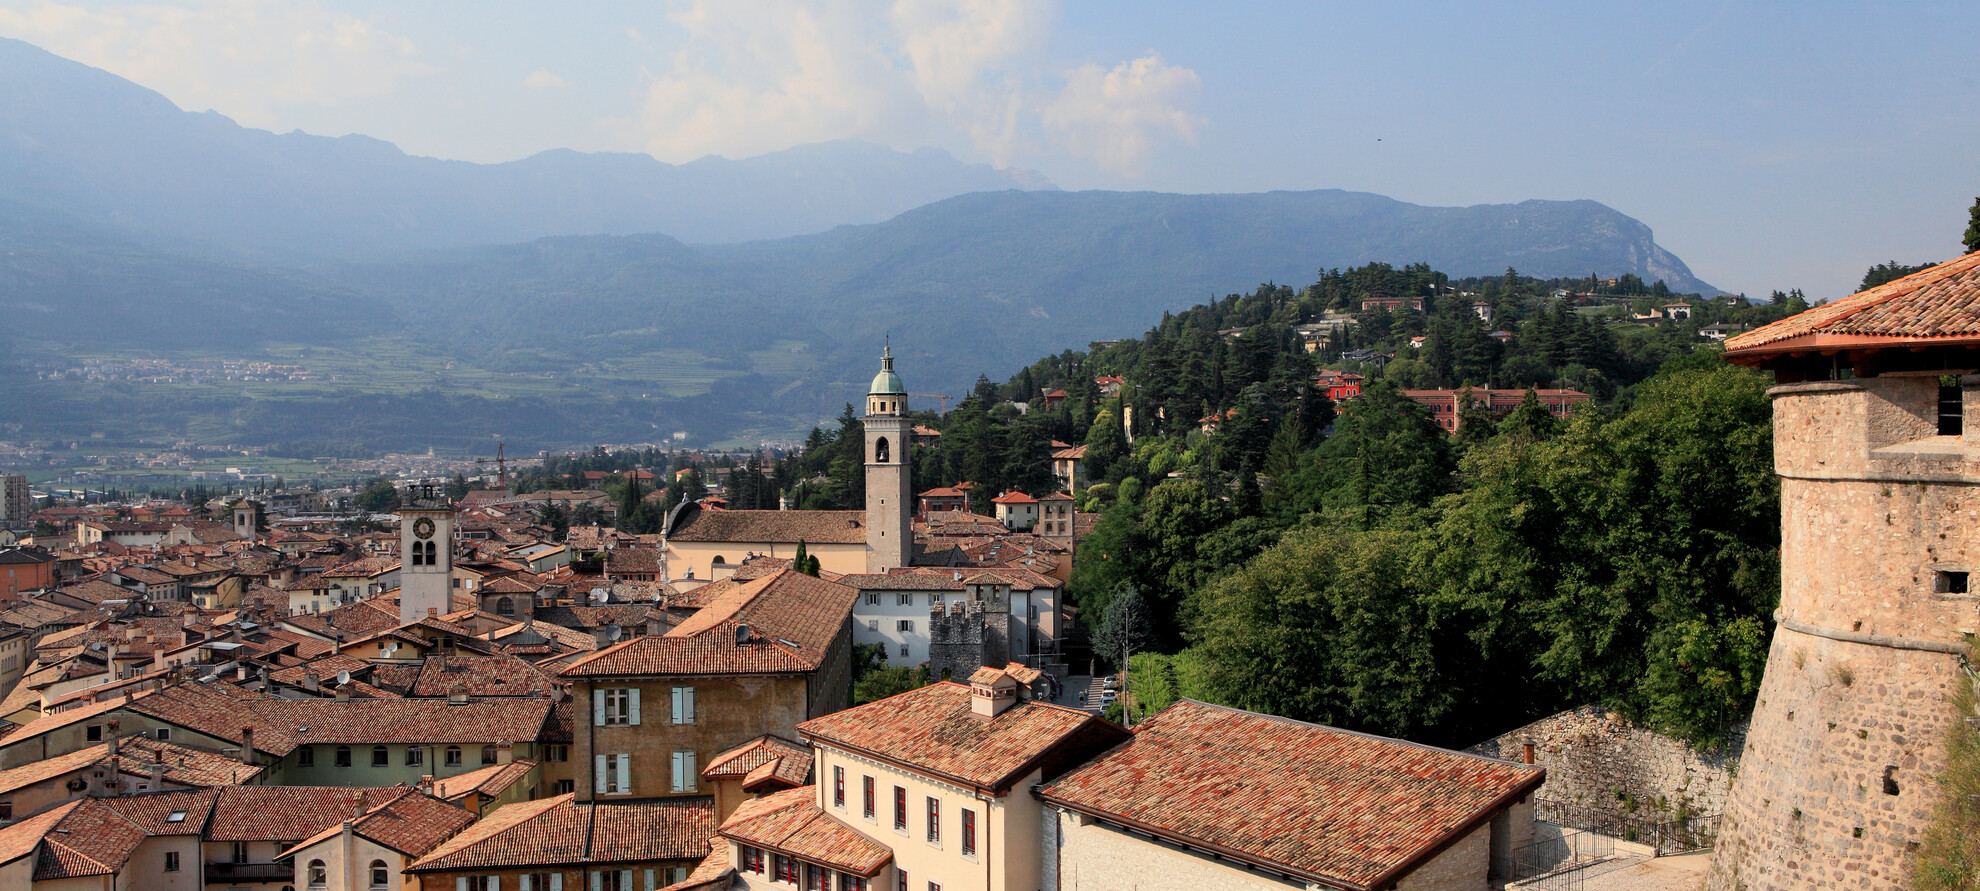 Historische Orte im September und Oktober in Rovereto zu besuchen, Trentino, Norditalien